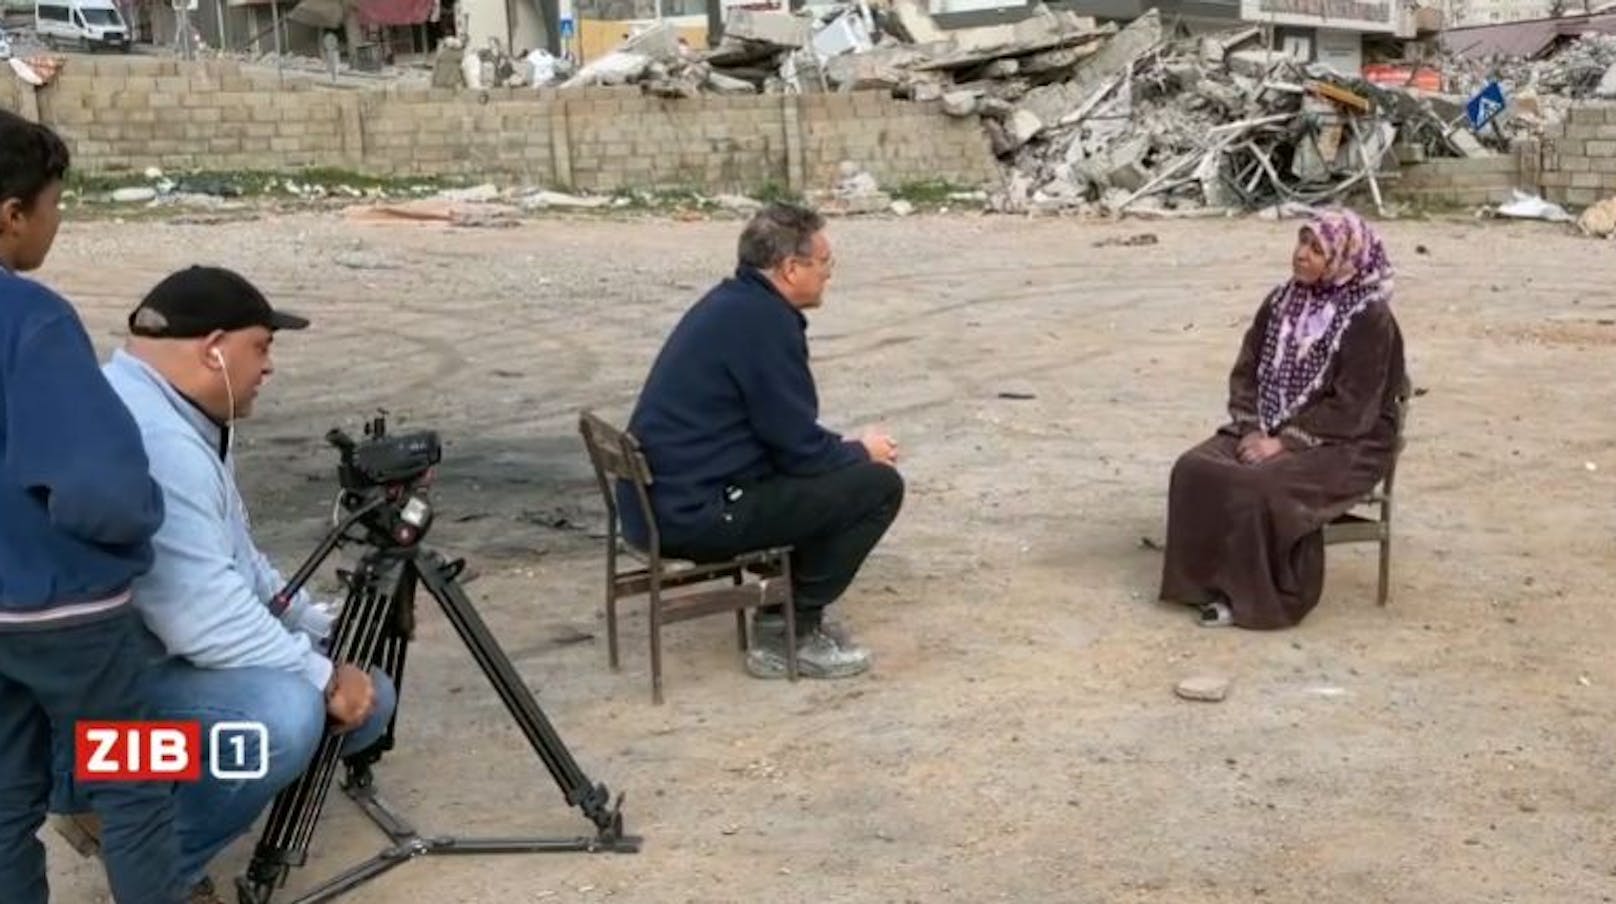 Nahost-Reporter Karim El-Gawhary bekam bei seinem Lokalaugenschein in der türkischen Erdbebenregion Antakya die Katastrophe am eigenen Leib zu spüren.